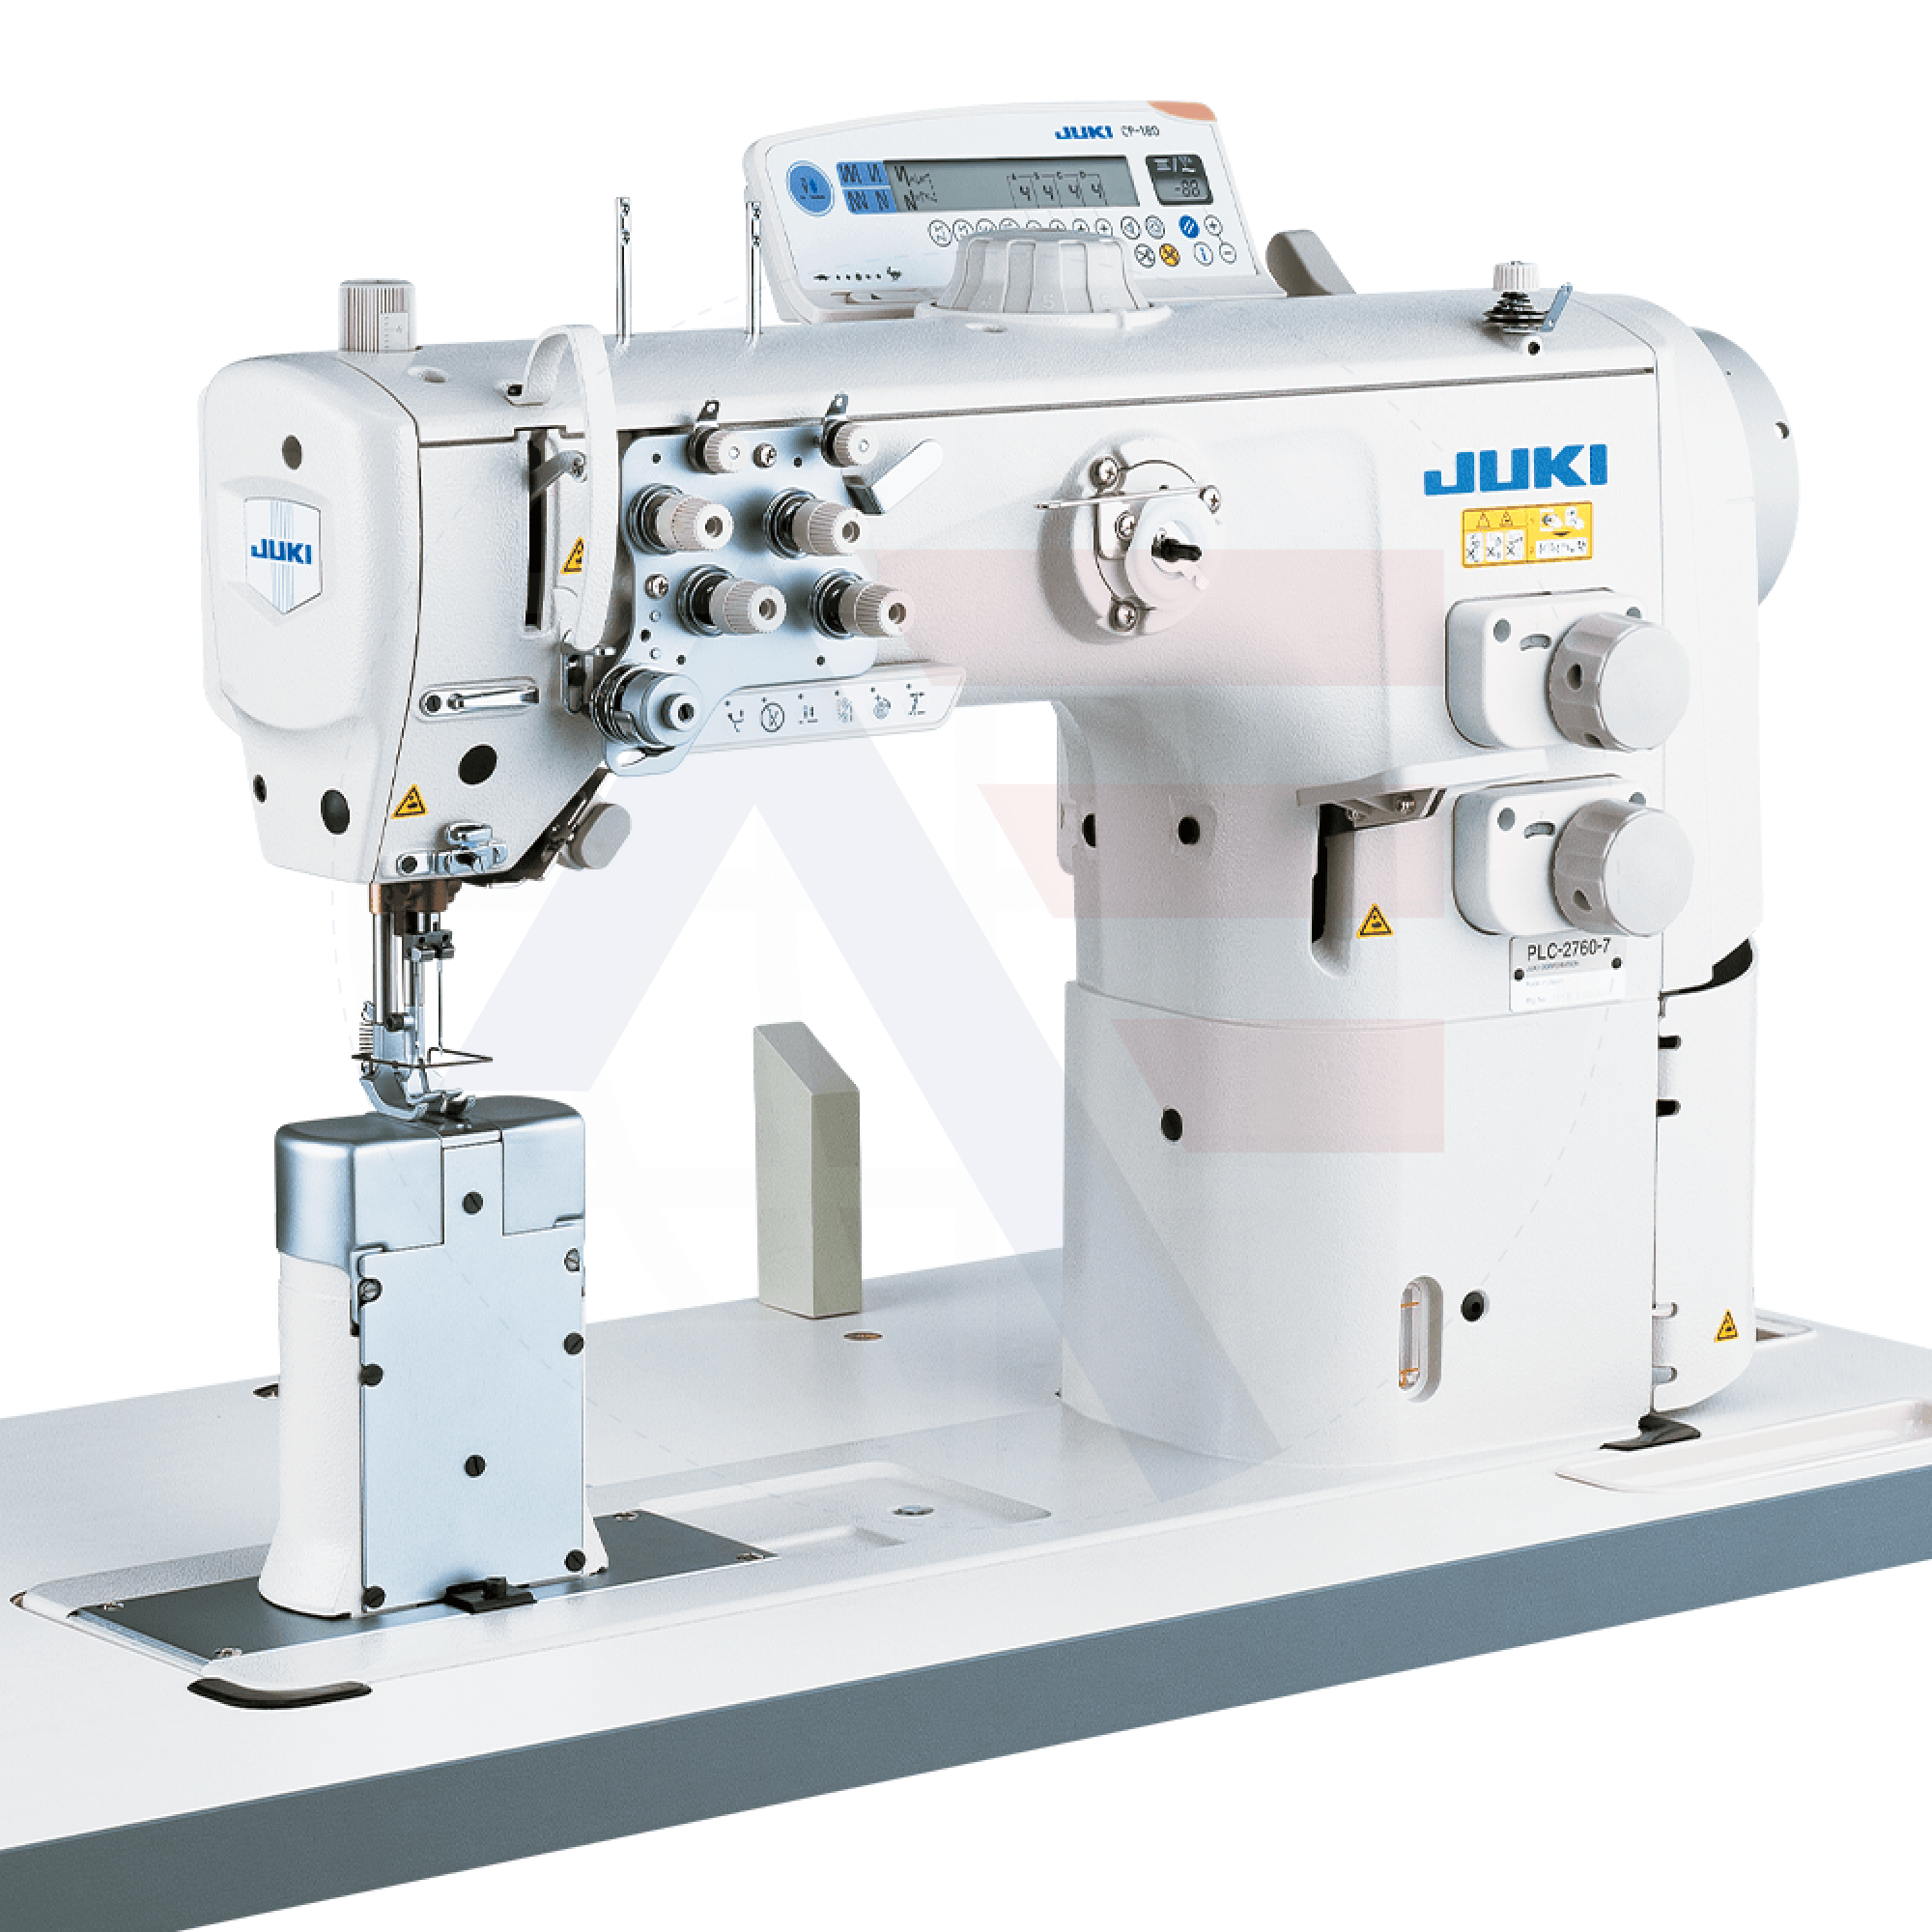 Juki Plc-2710 1-Needle Post-Bed Walking-Foot Machine Sewing Machines